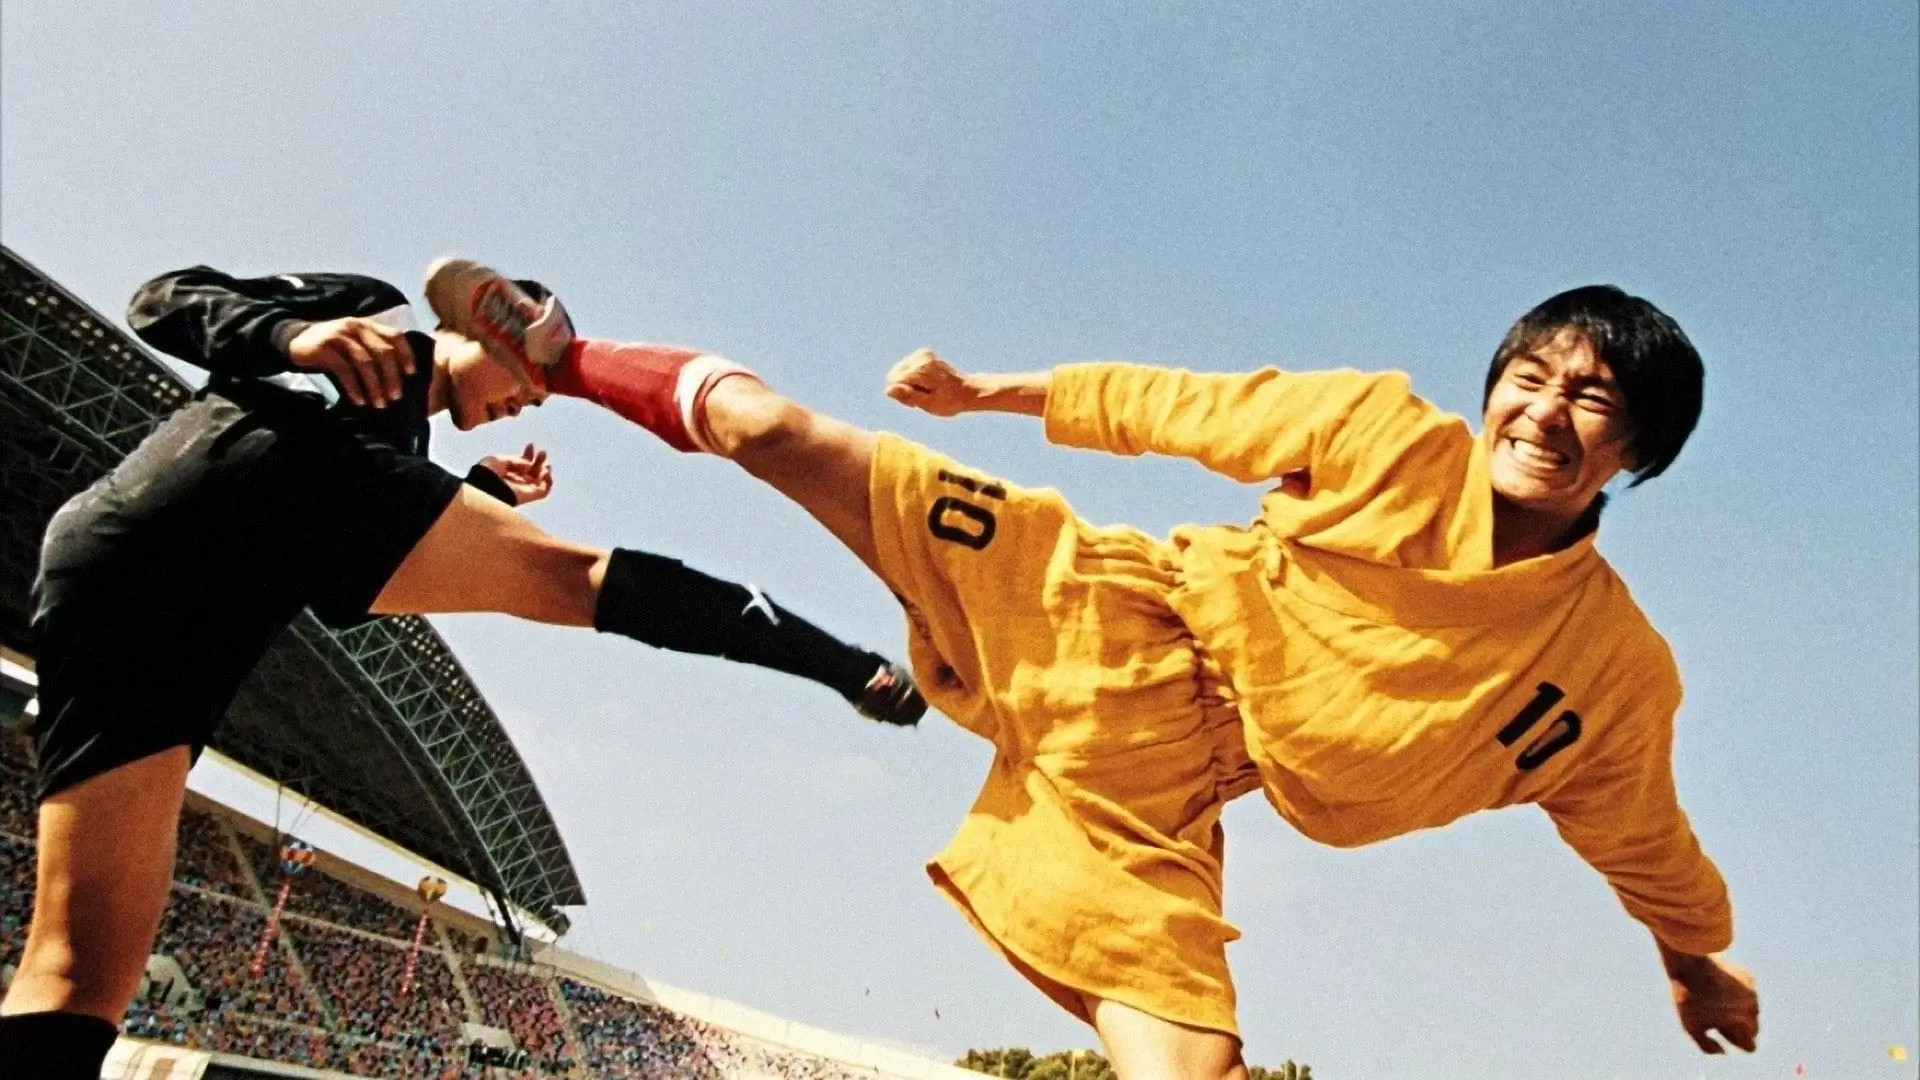 دانلود فیلم Shaolin Soccer 2001 (فوتبال شائولین) با زیرنویس فارسی و تماشای آنلاین